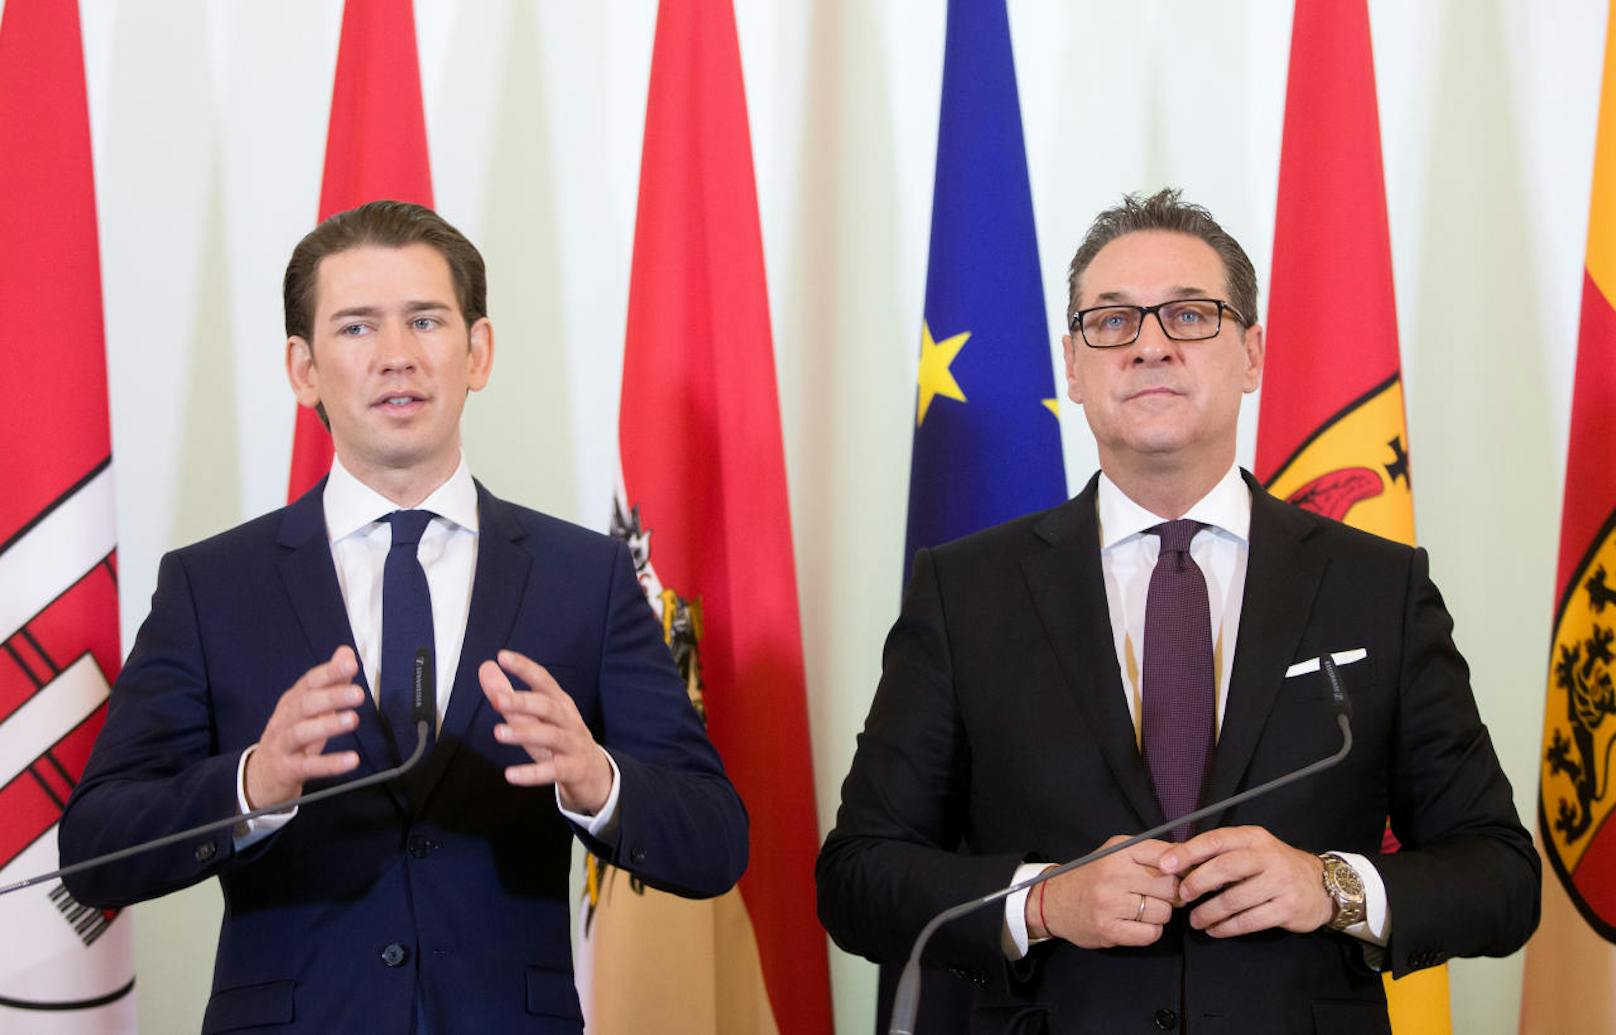 Bundeskanzler Sebastian Kurz (ÖVP) und Vizekanzler Heinz-Christian Strache (FPÖ) nach einer Sitzung des Ministerrates am 18. April 2018.